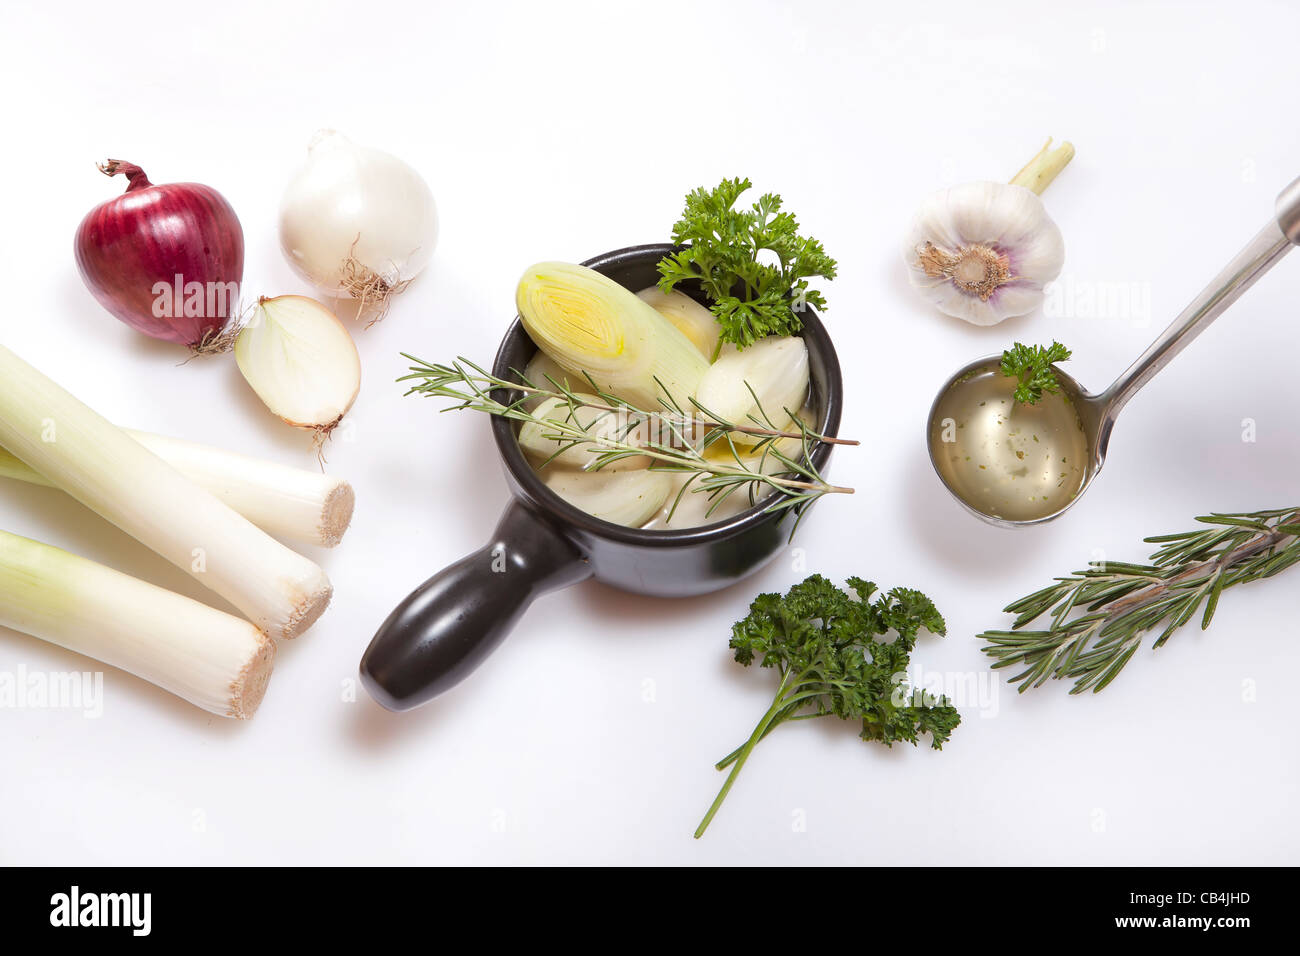 Ingrédients pour cuisiner une soupe à l'oignon et poireaux frais Banque D'Images